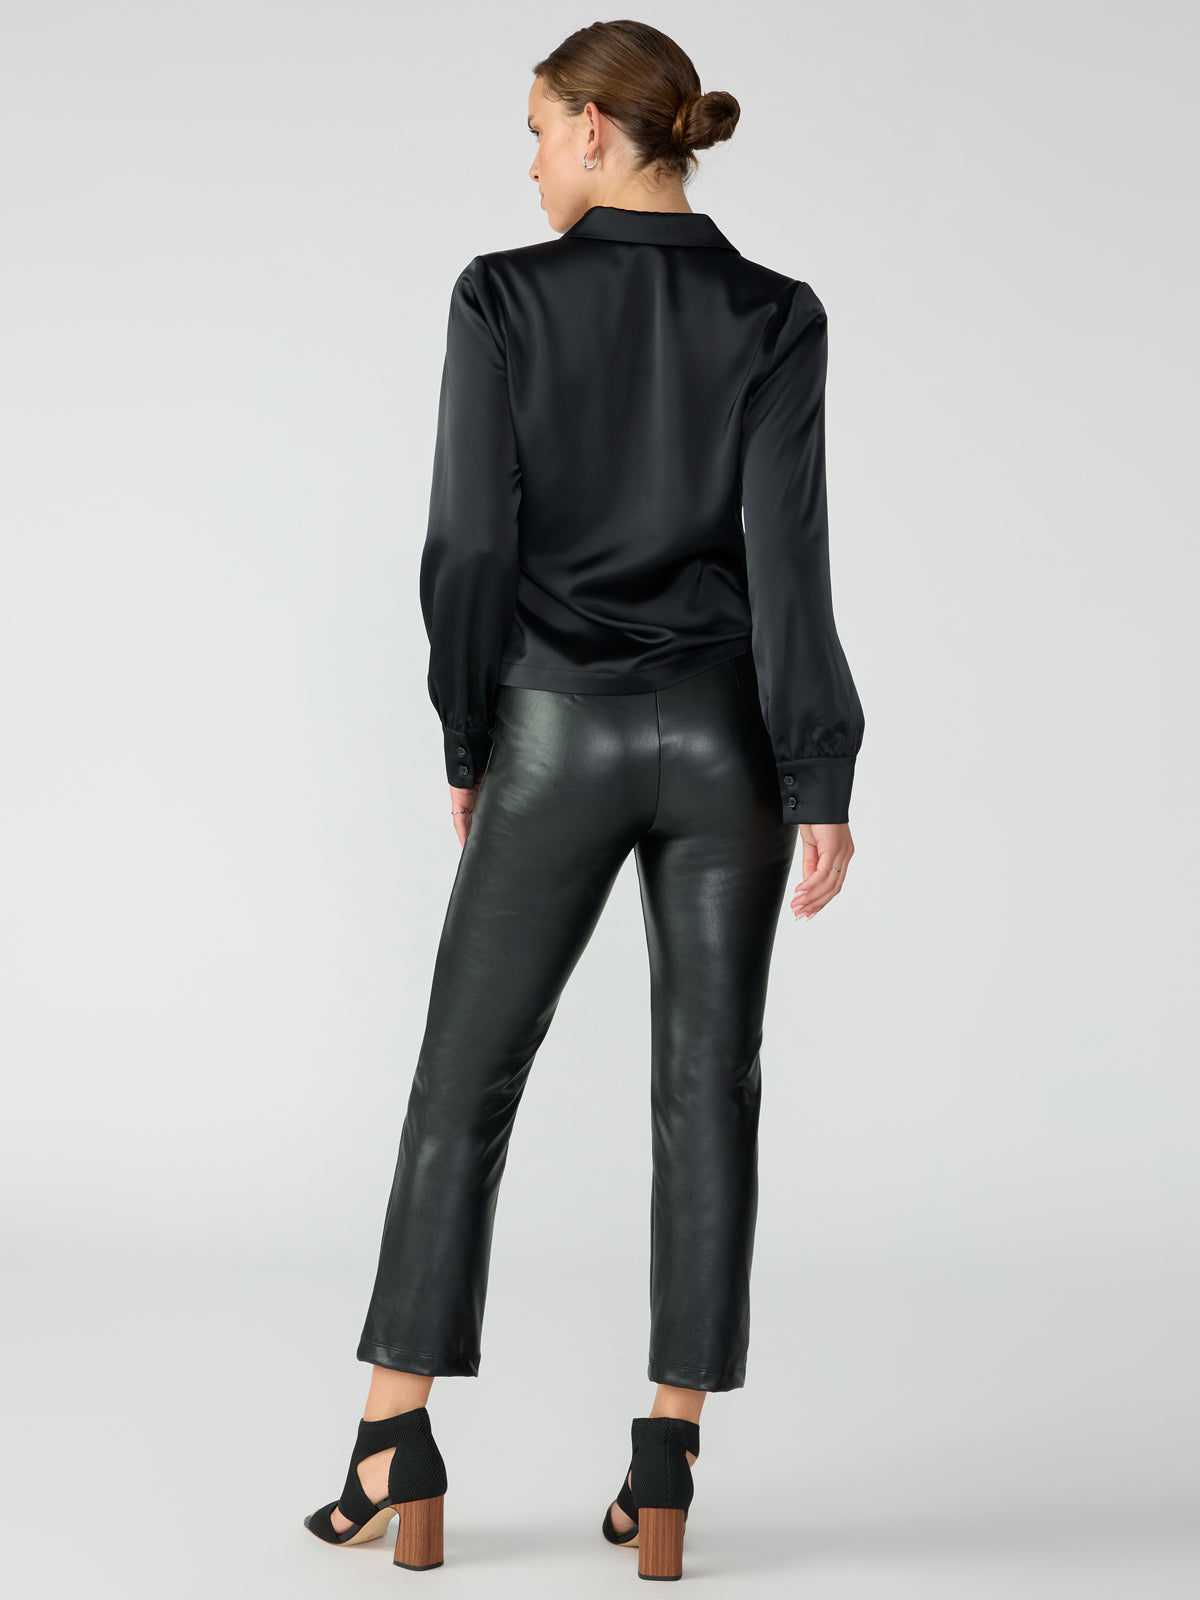 Women's Daria Kick Crop Pant In Black Onyx